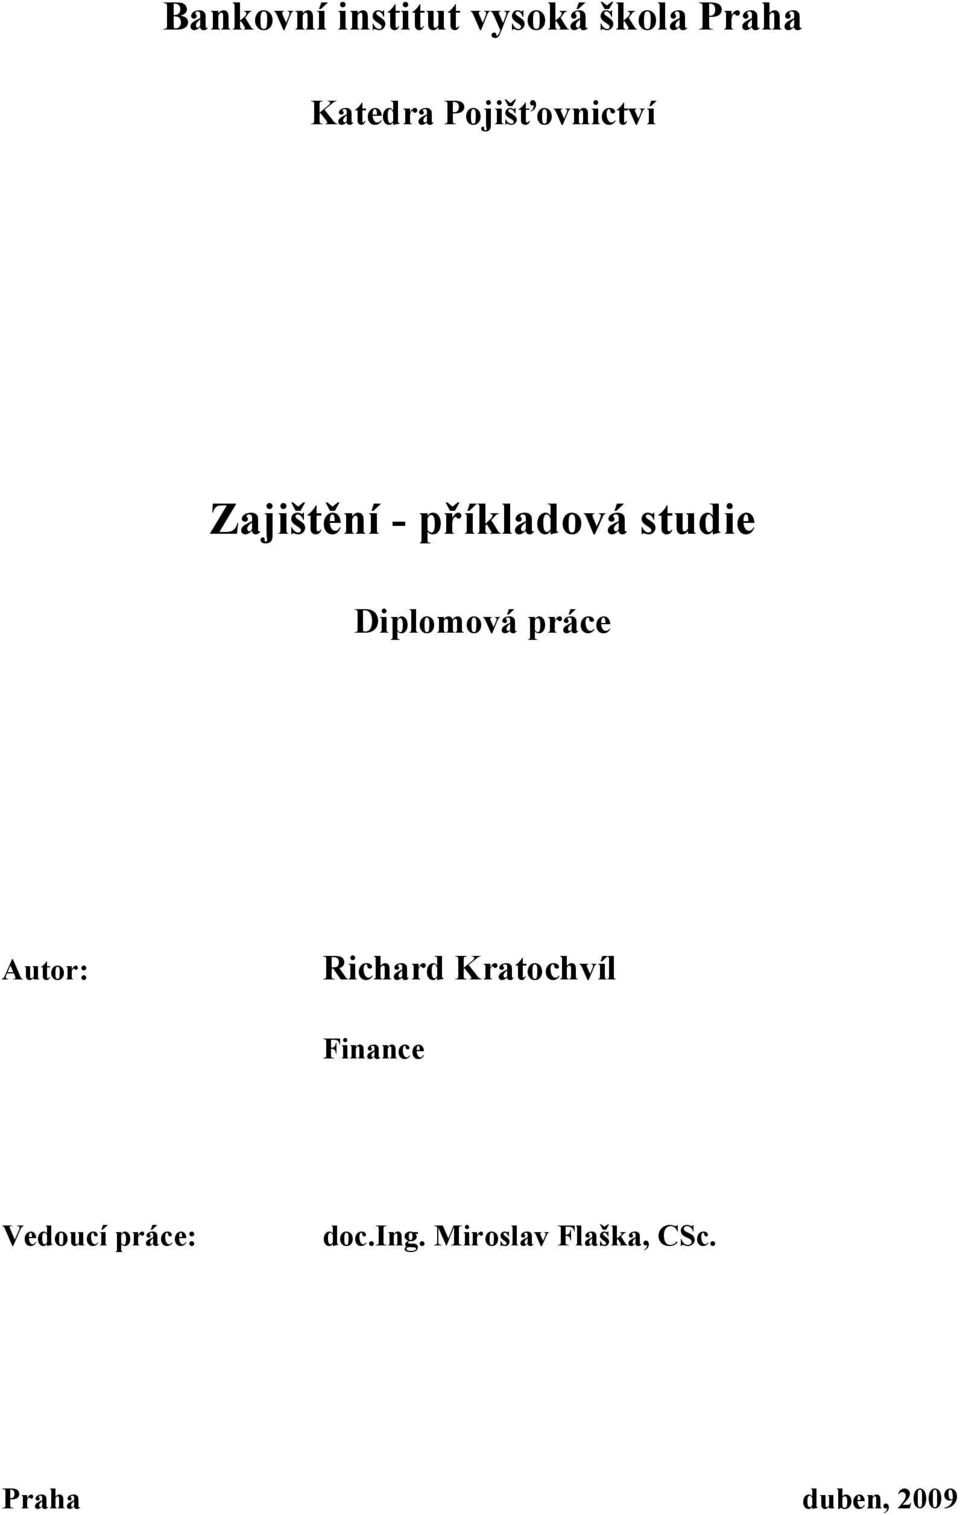 Diplomová práce Autor: Richard Kratochvíl Finance